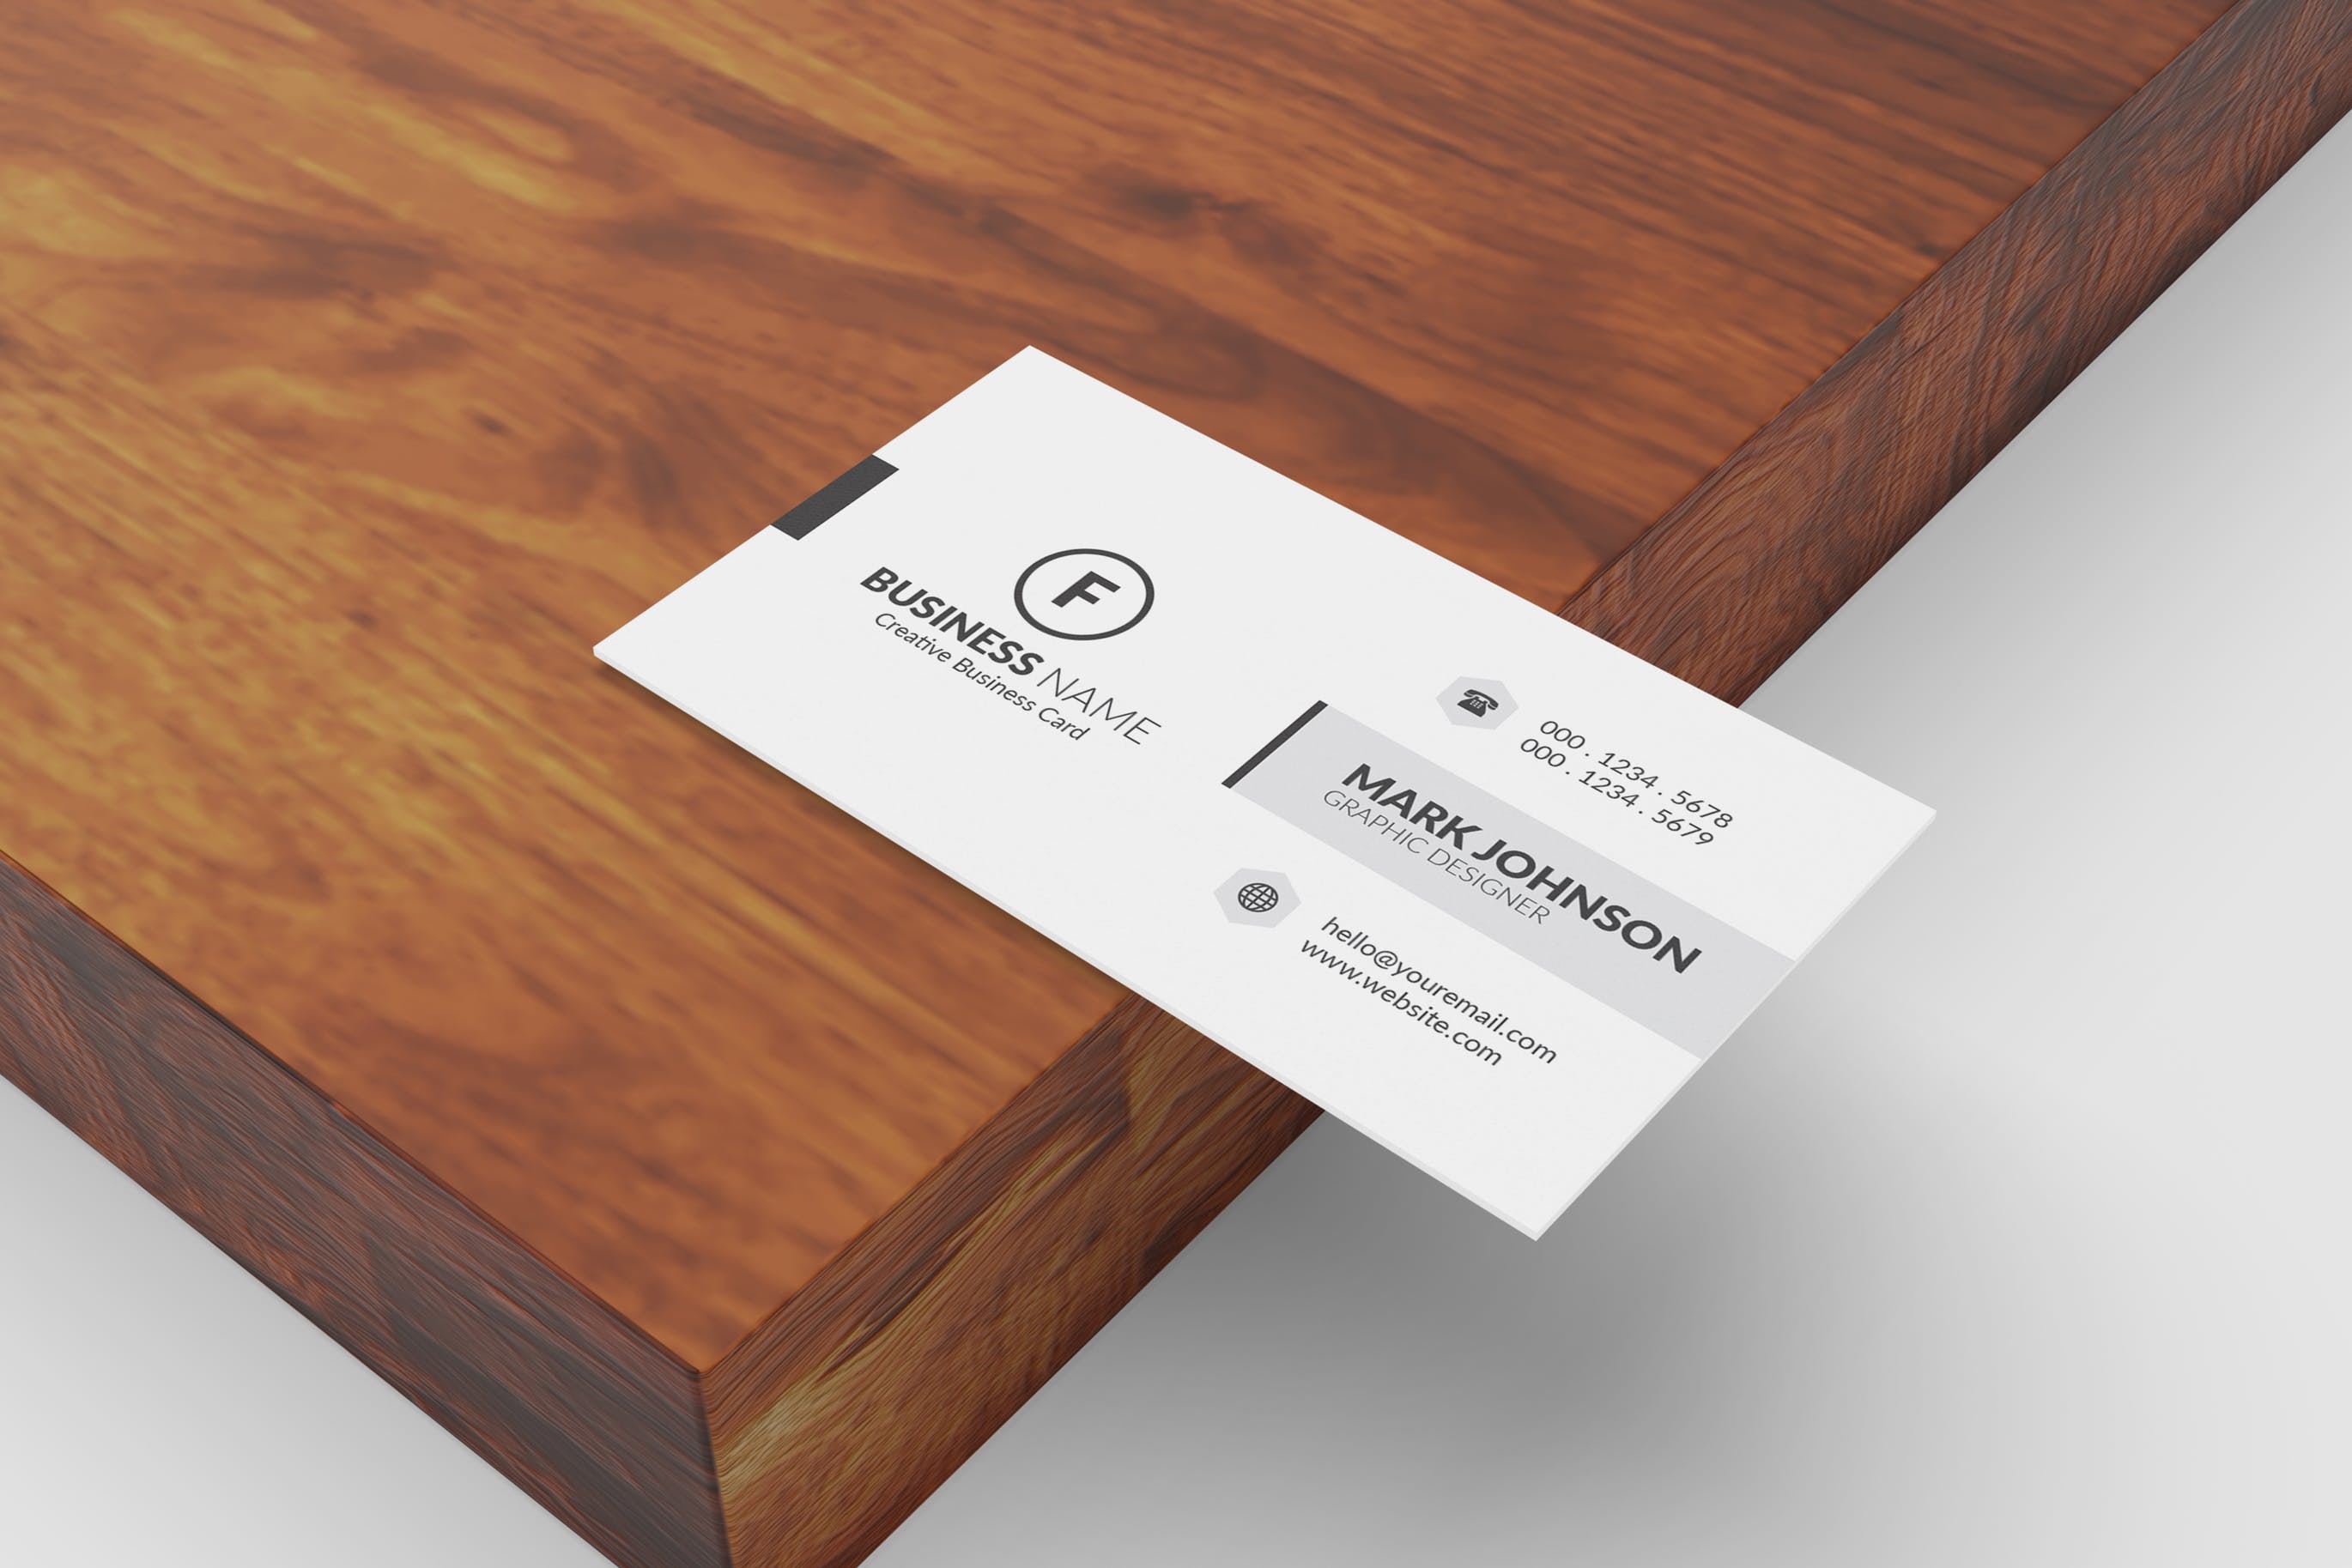 极简设计风格名片设计效果图第一素材精选 Minimalist Business Cards Mockup插图